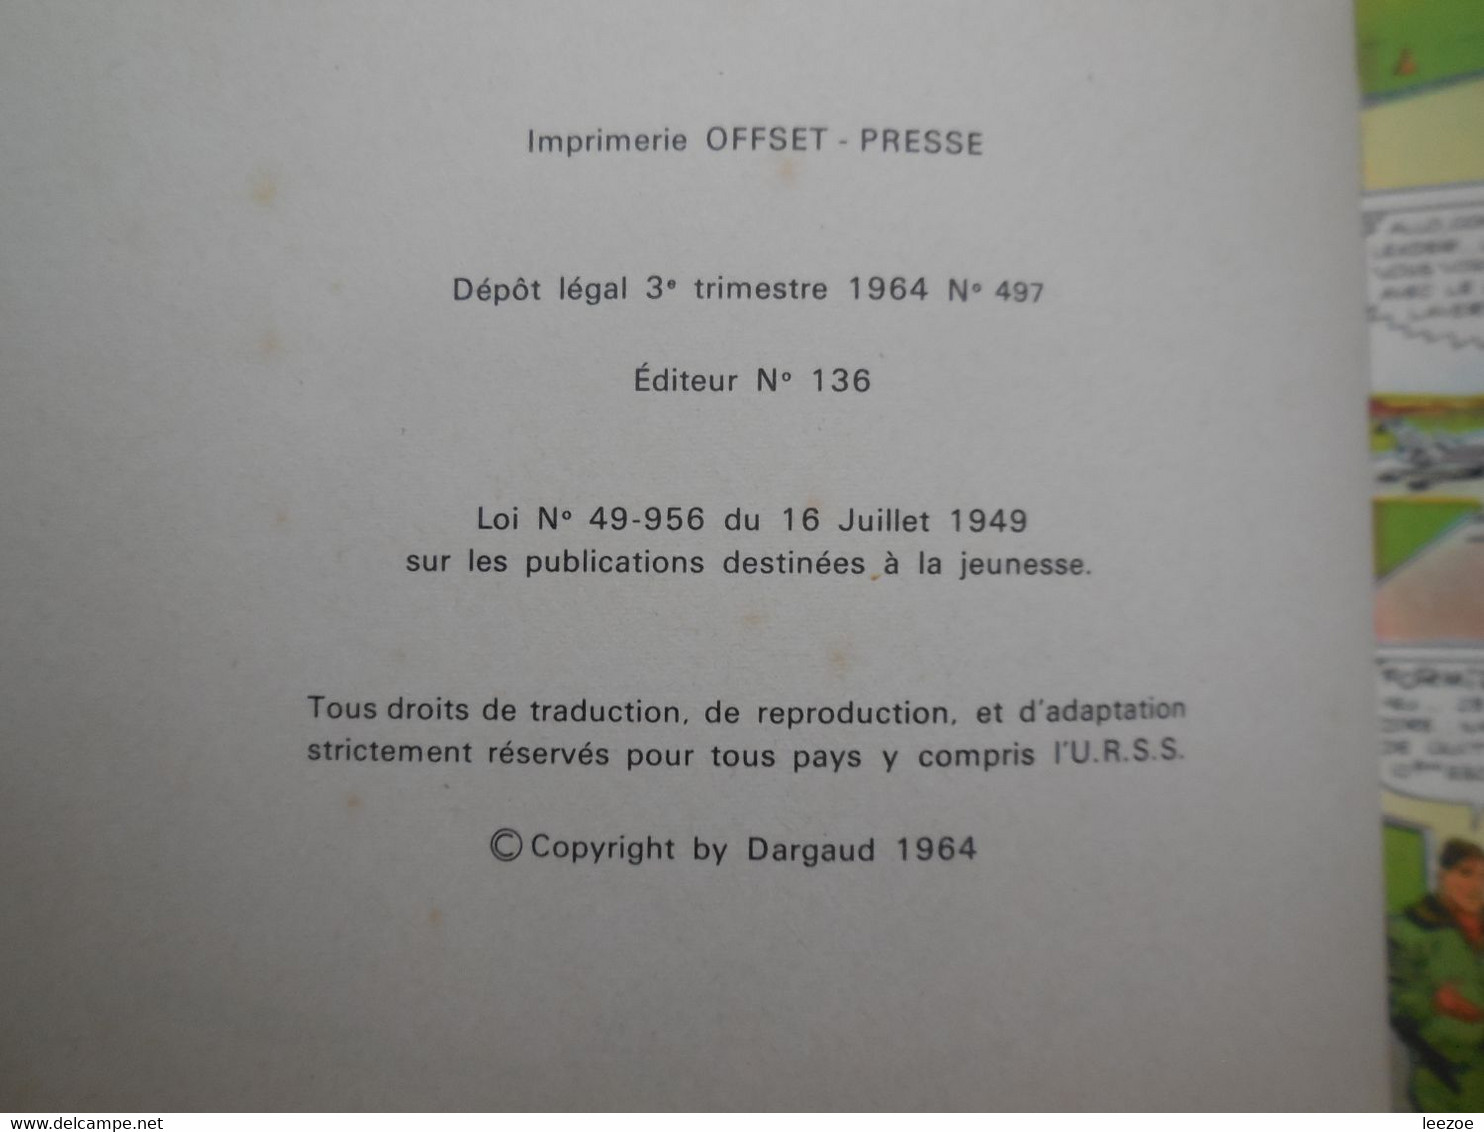 EO BD collection Pilote Tanguy et Laverdure n°4. Escadrille des Cigognes 1964, LE LOMBARD (peu commun).......N5.04.08